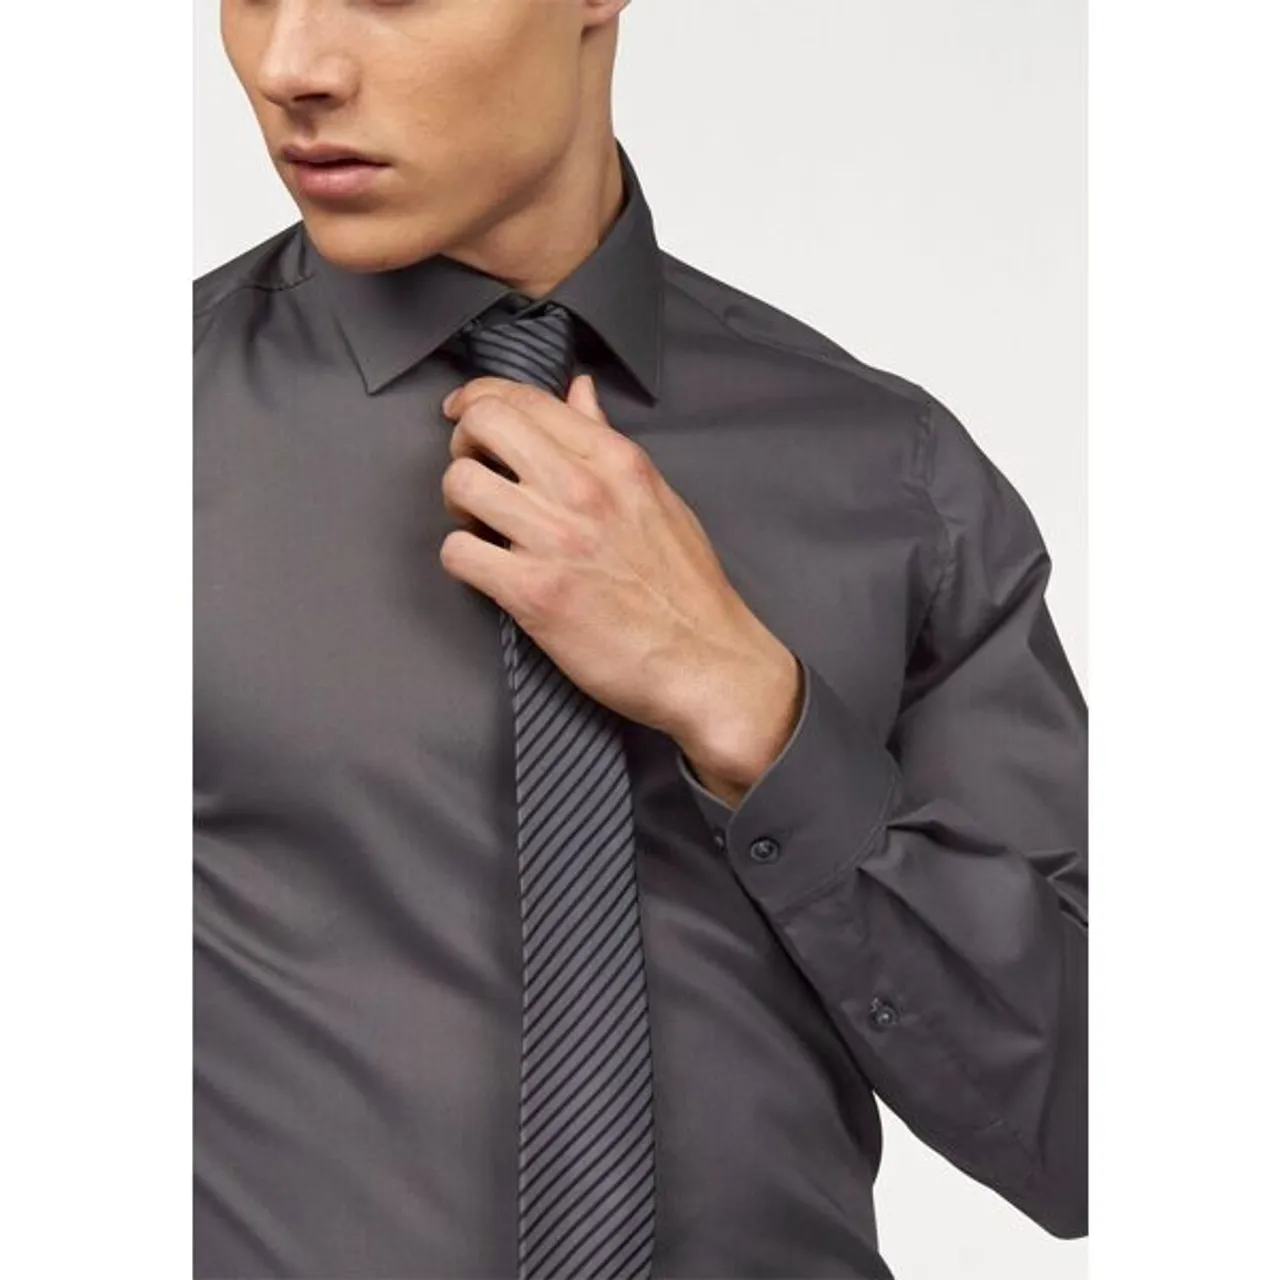 Langarmhemd BRUNO BANANI "Slim-fit" Gr. 41/42 (L), N-Gr, grau (anthrazit) Herren Hemden Langarm Formbeständig durch Elastananteil